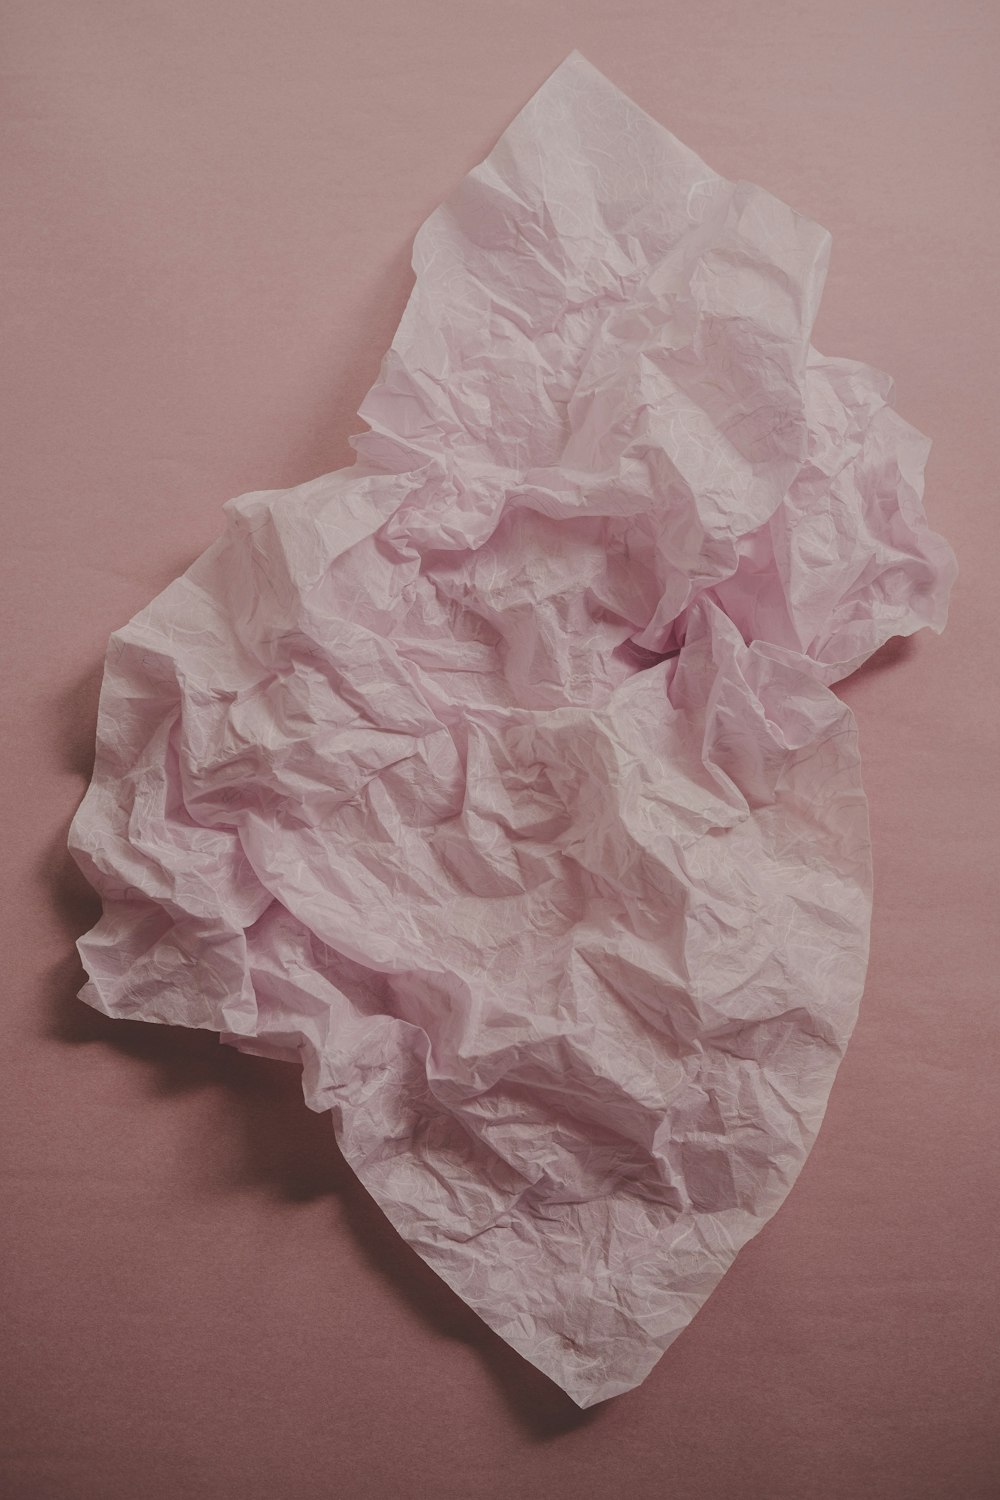 un pezzo di carta sgualcito su una superficie rosa